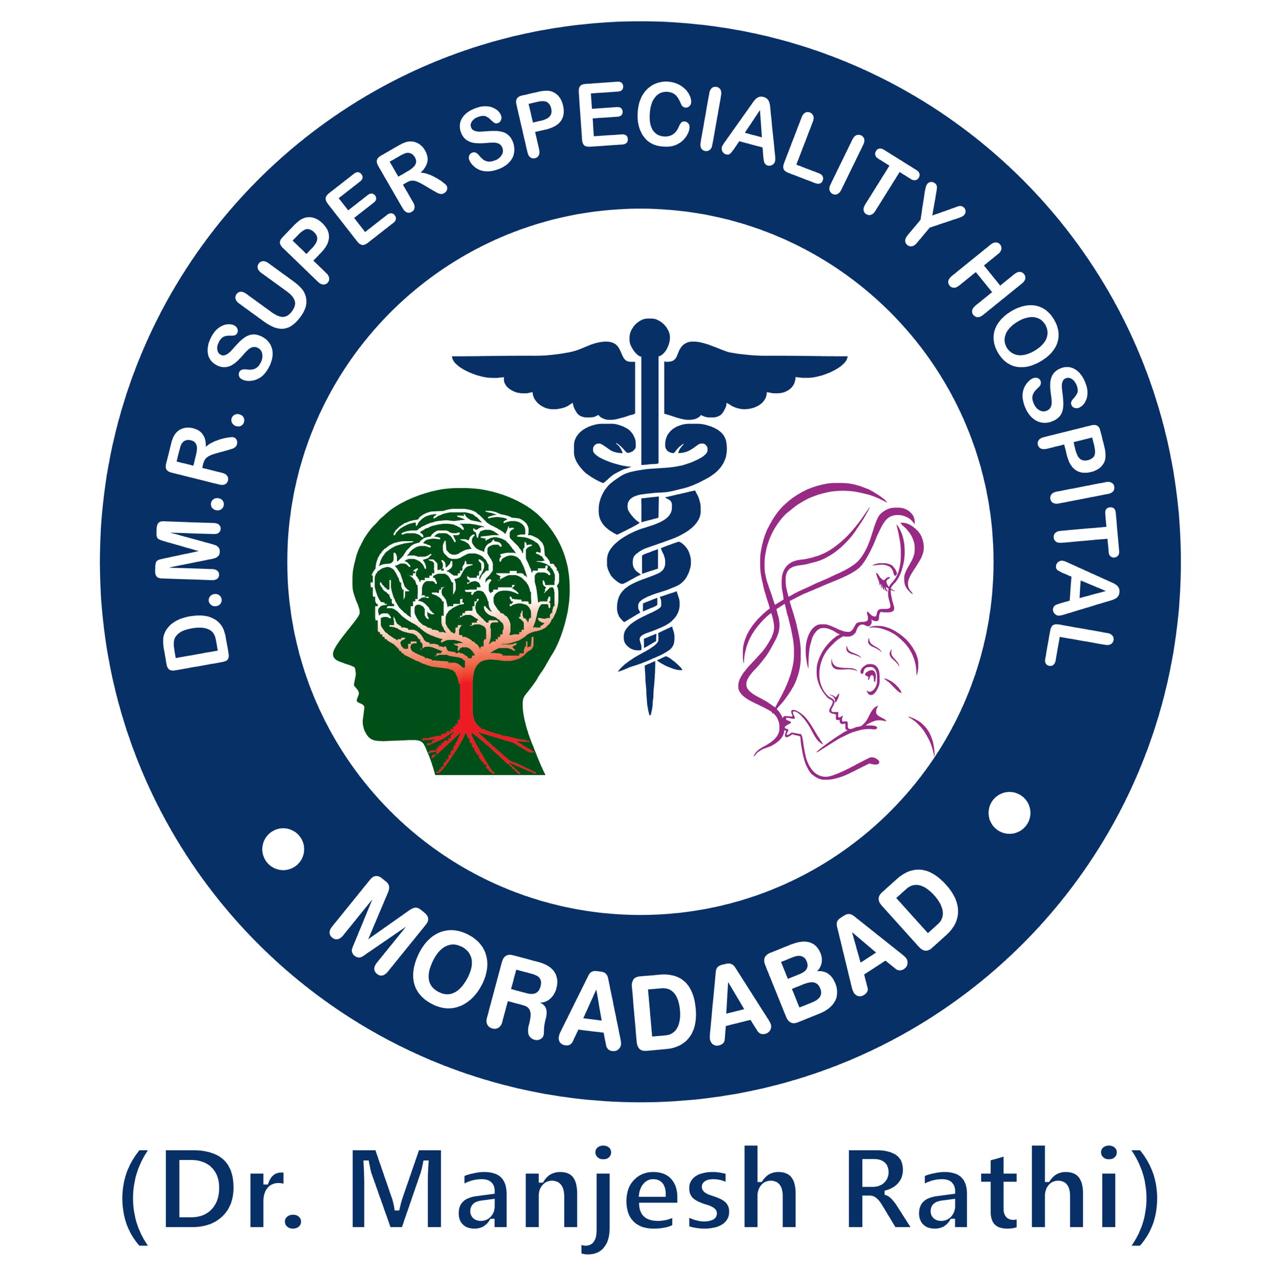 DMR Hospital|Hospitals|Medical Services